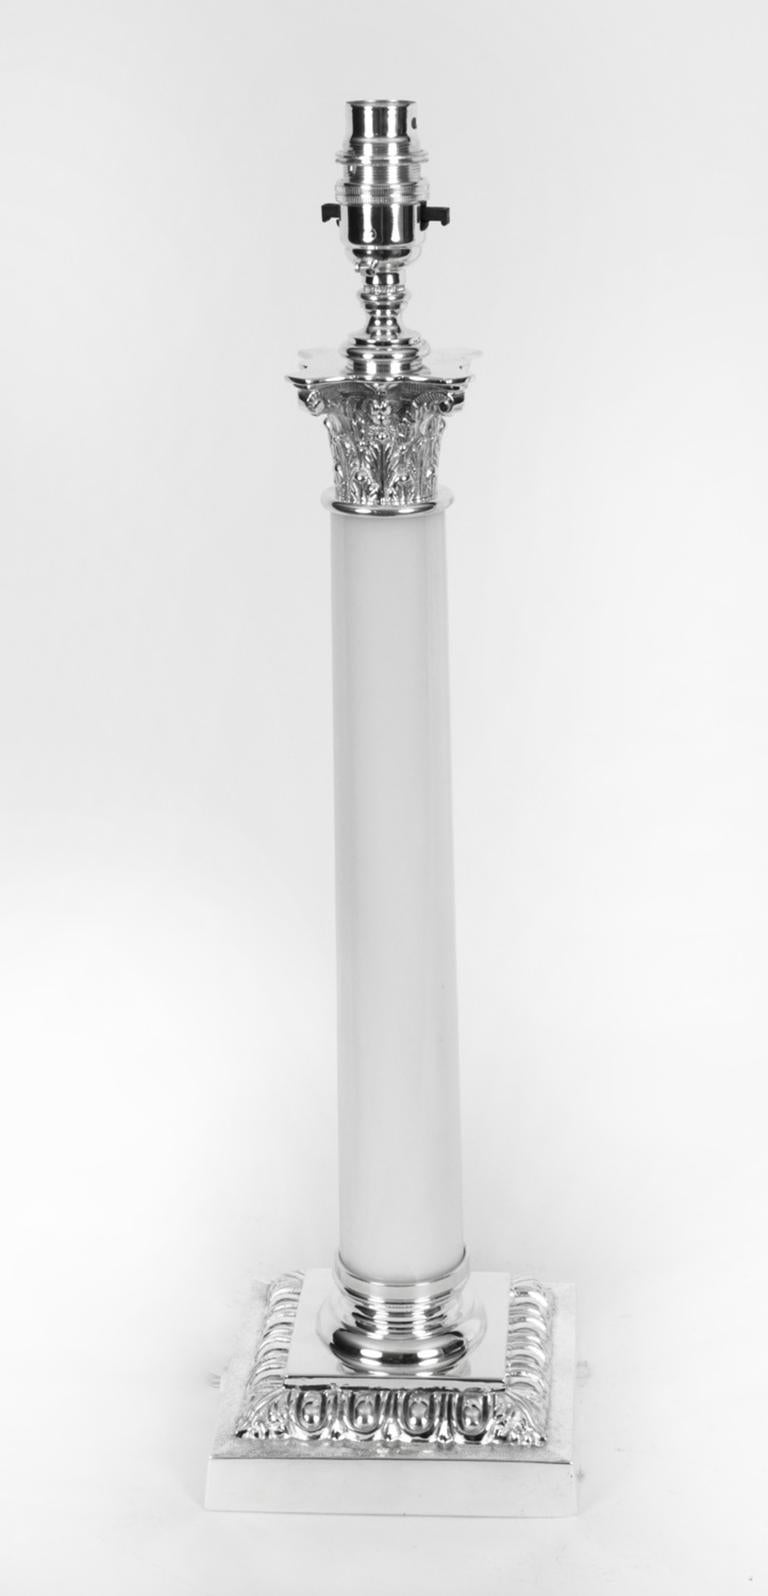 Il s'agit d'une splendide paire ancienne de lampes de table à colonne corinthienne en métal argenté et verre opalin, maintenant converties à l'électricité, datant d'environ 1920.

Elle présente un chapiteau corinthien classique décoré de feuilles